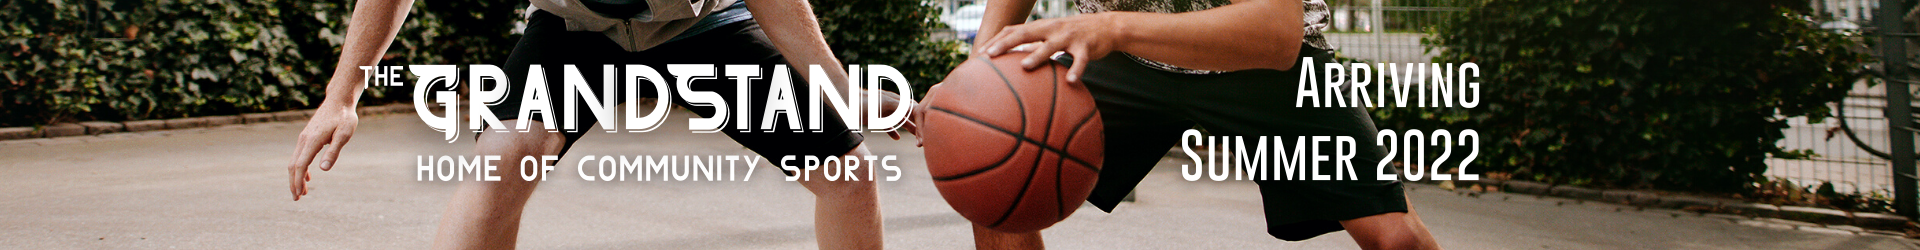 Grandstand Header - Basketball - 2 - 1920x250px